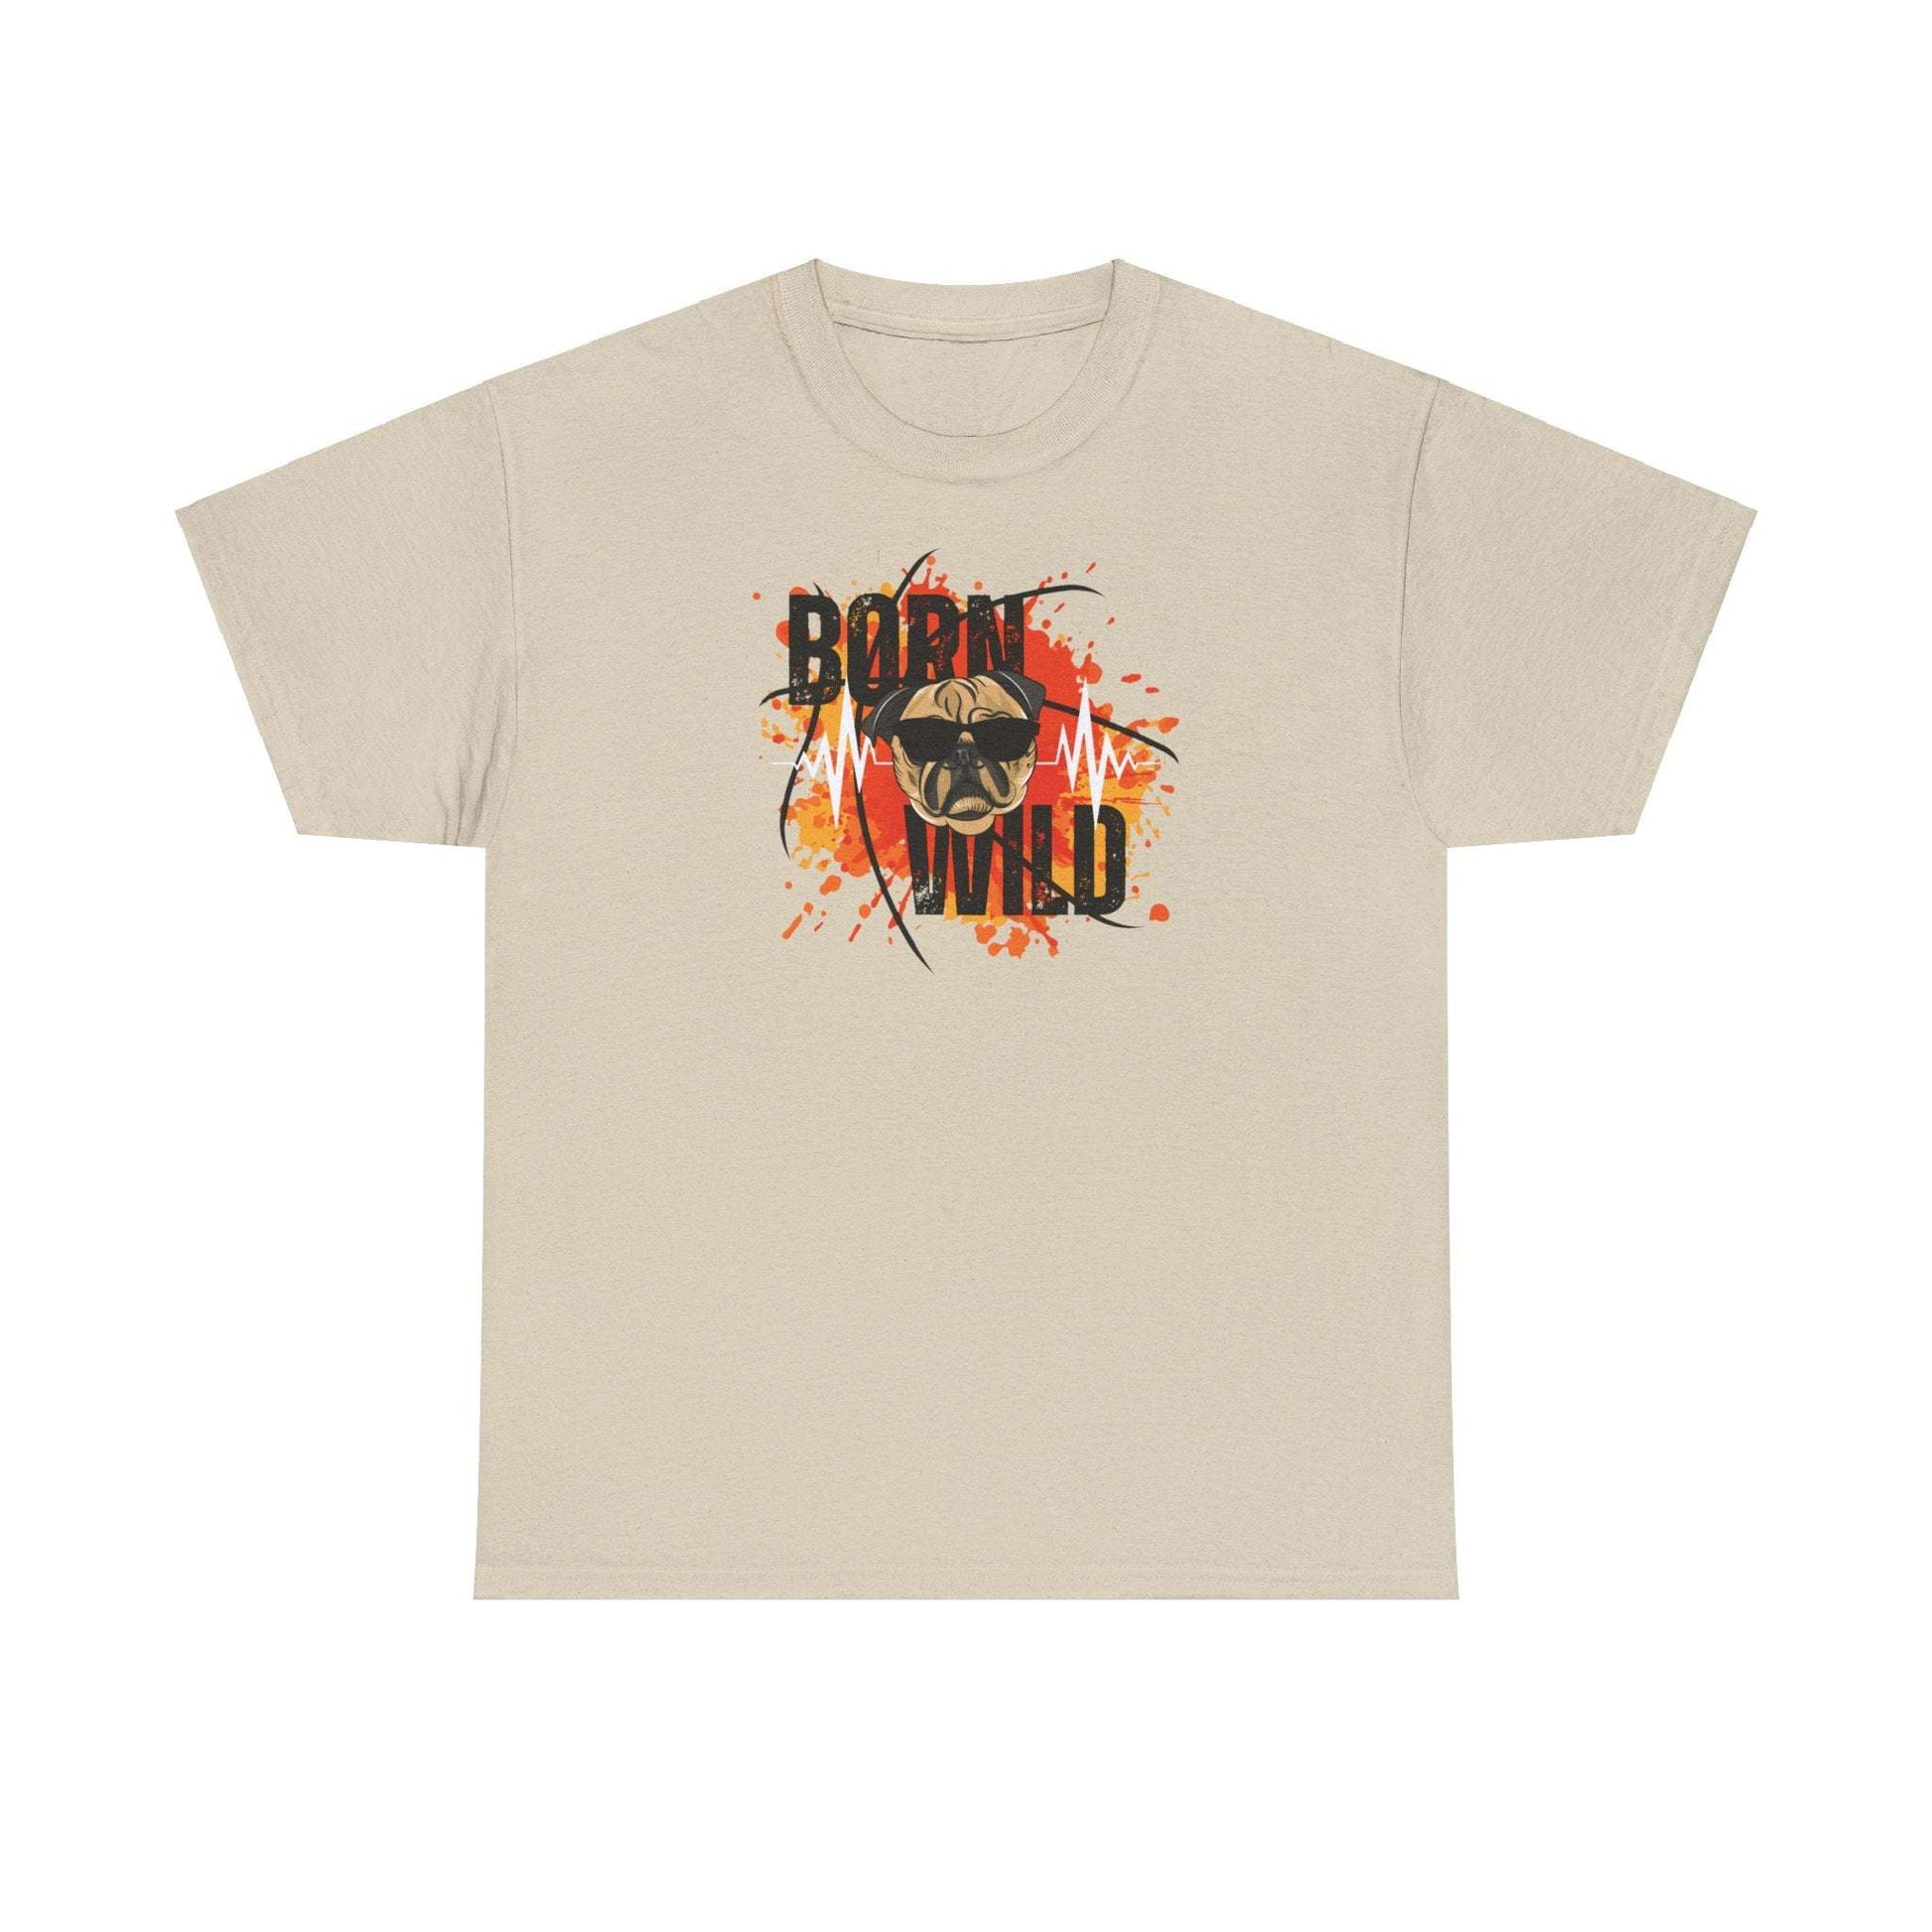 Pug T-Shirt, "Born Wild", Ash